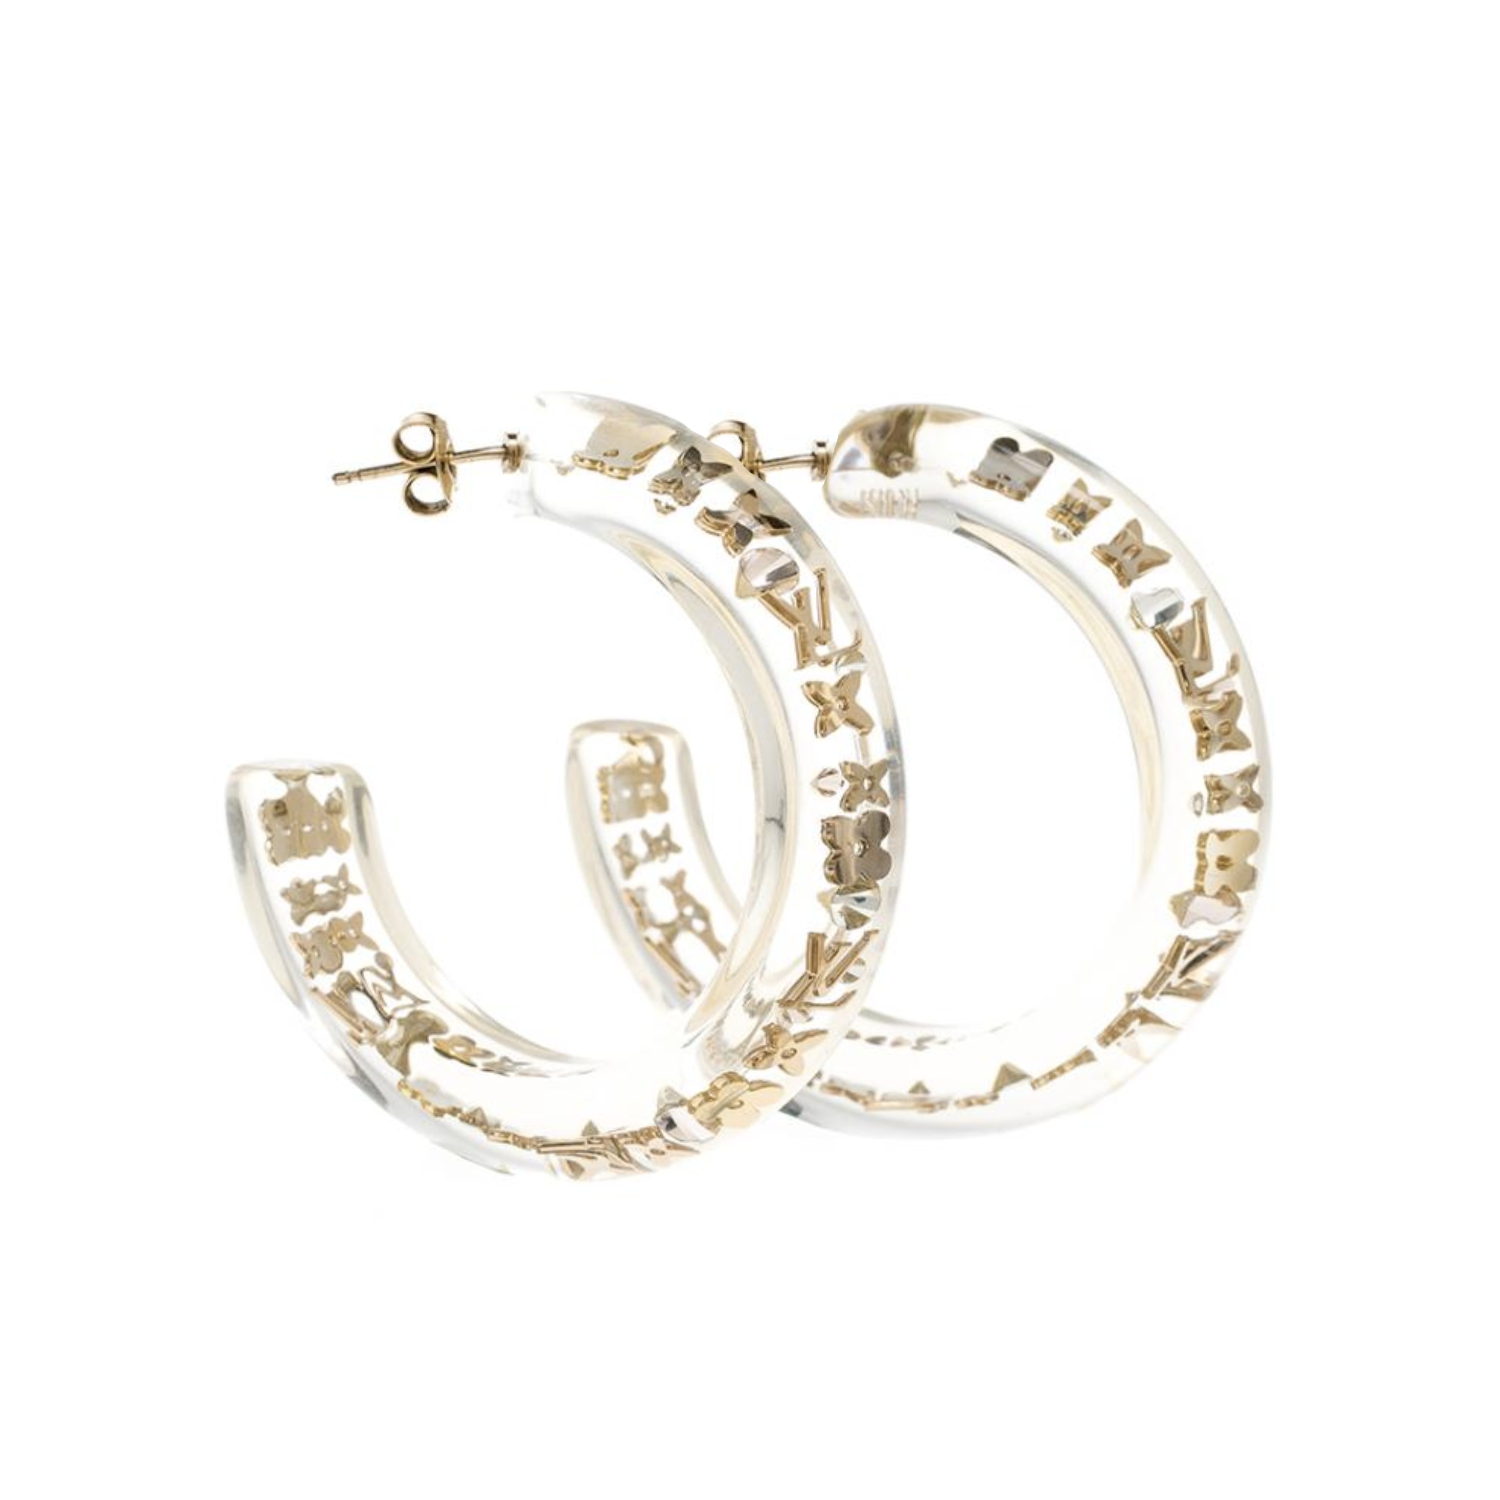 Louis Vuitton Monogram Resin Hoop Earrings in Gold | NITRYL